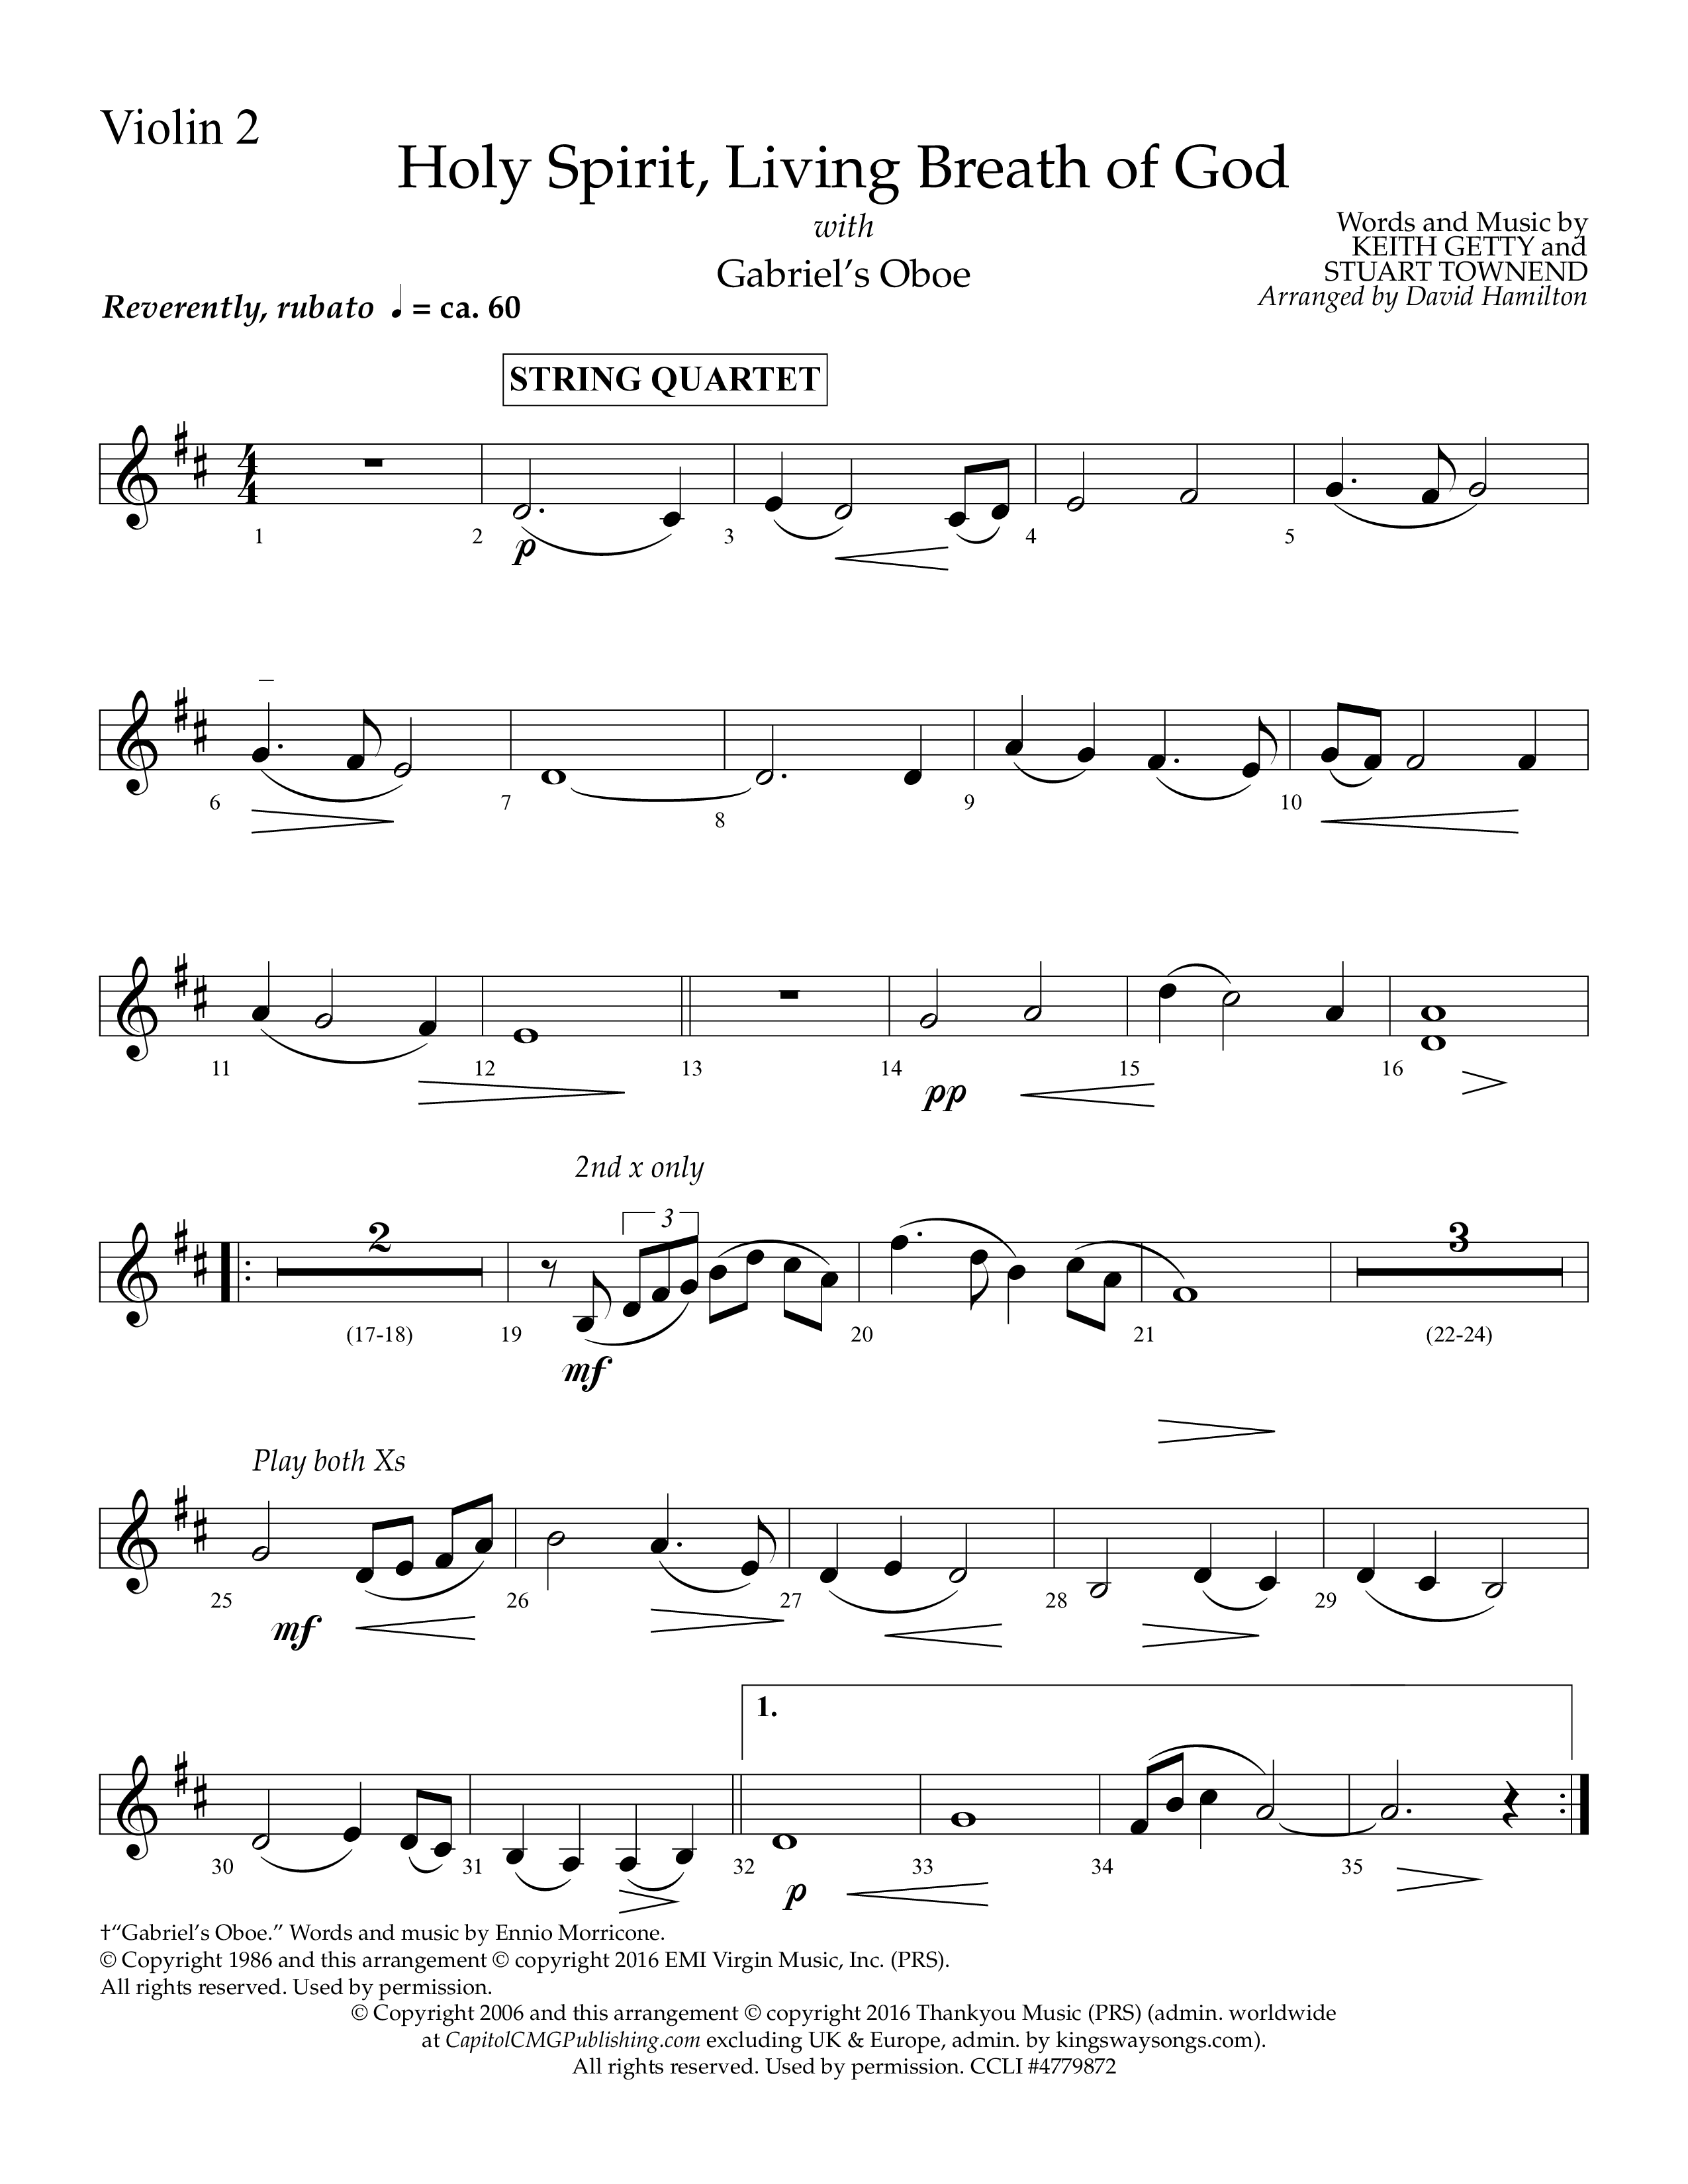 Holy Spirit Living Breath Of God (with Gabriel's Oboe) (Choral Anthem SATB) Violin 2 (Lifeway Choral / Arr. David Hamilton)